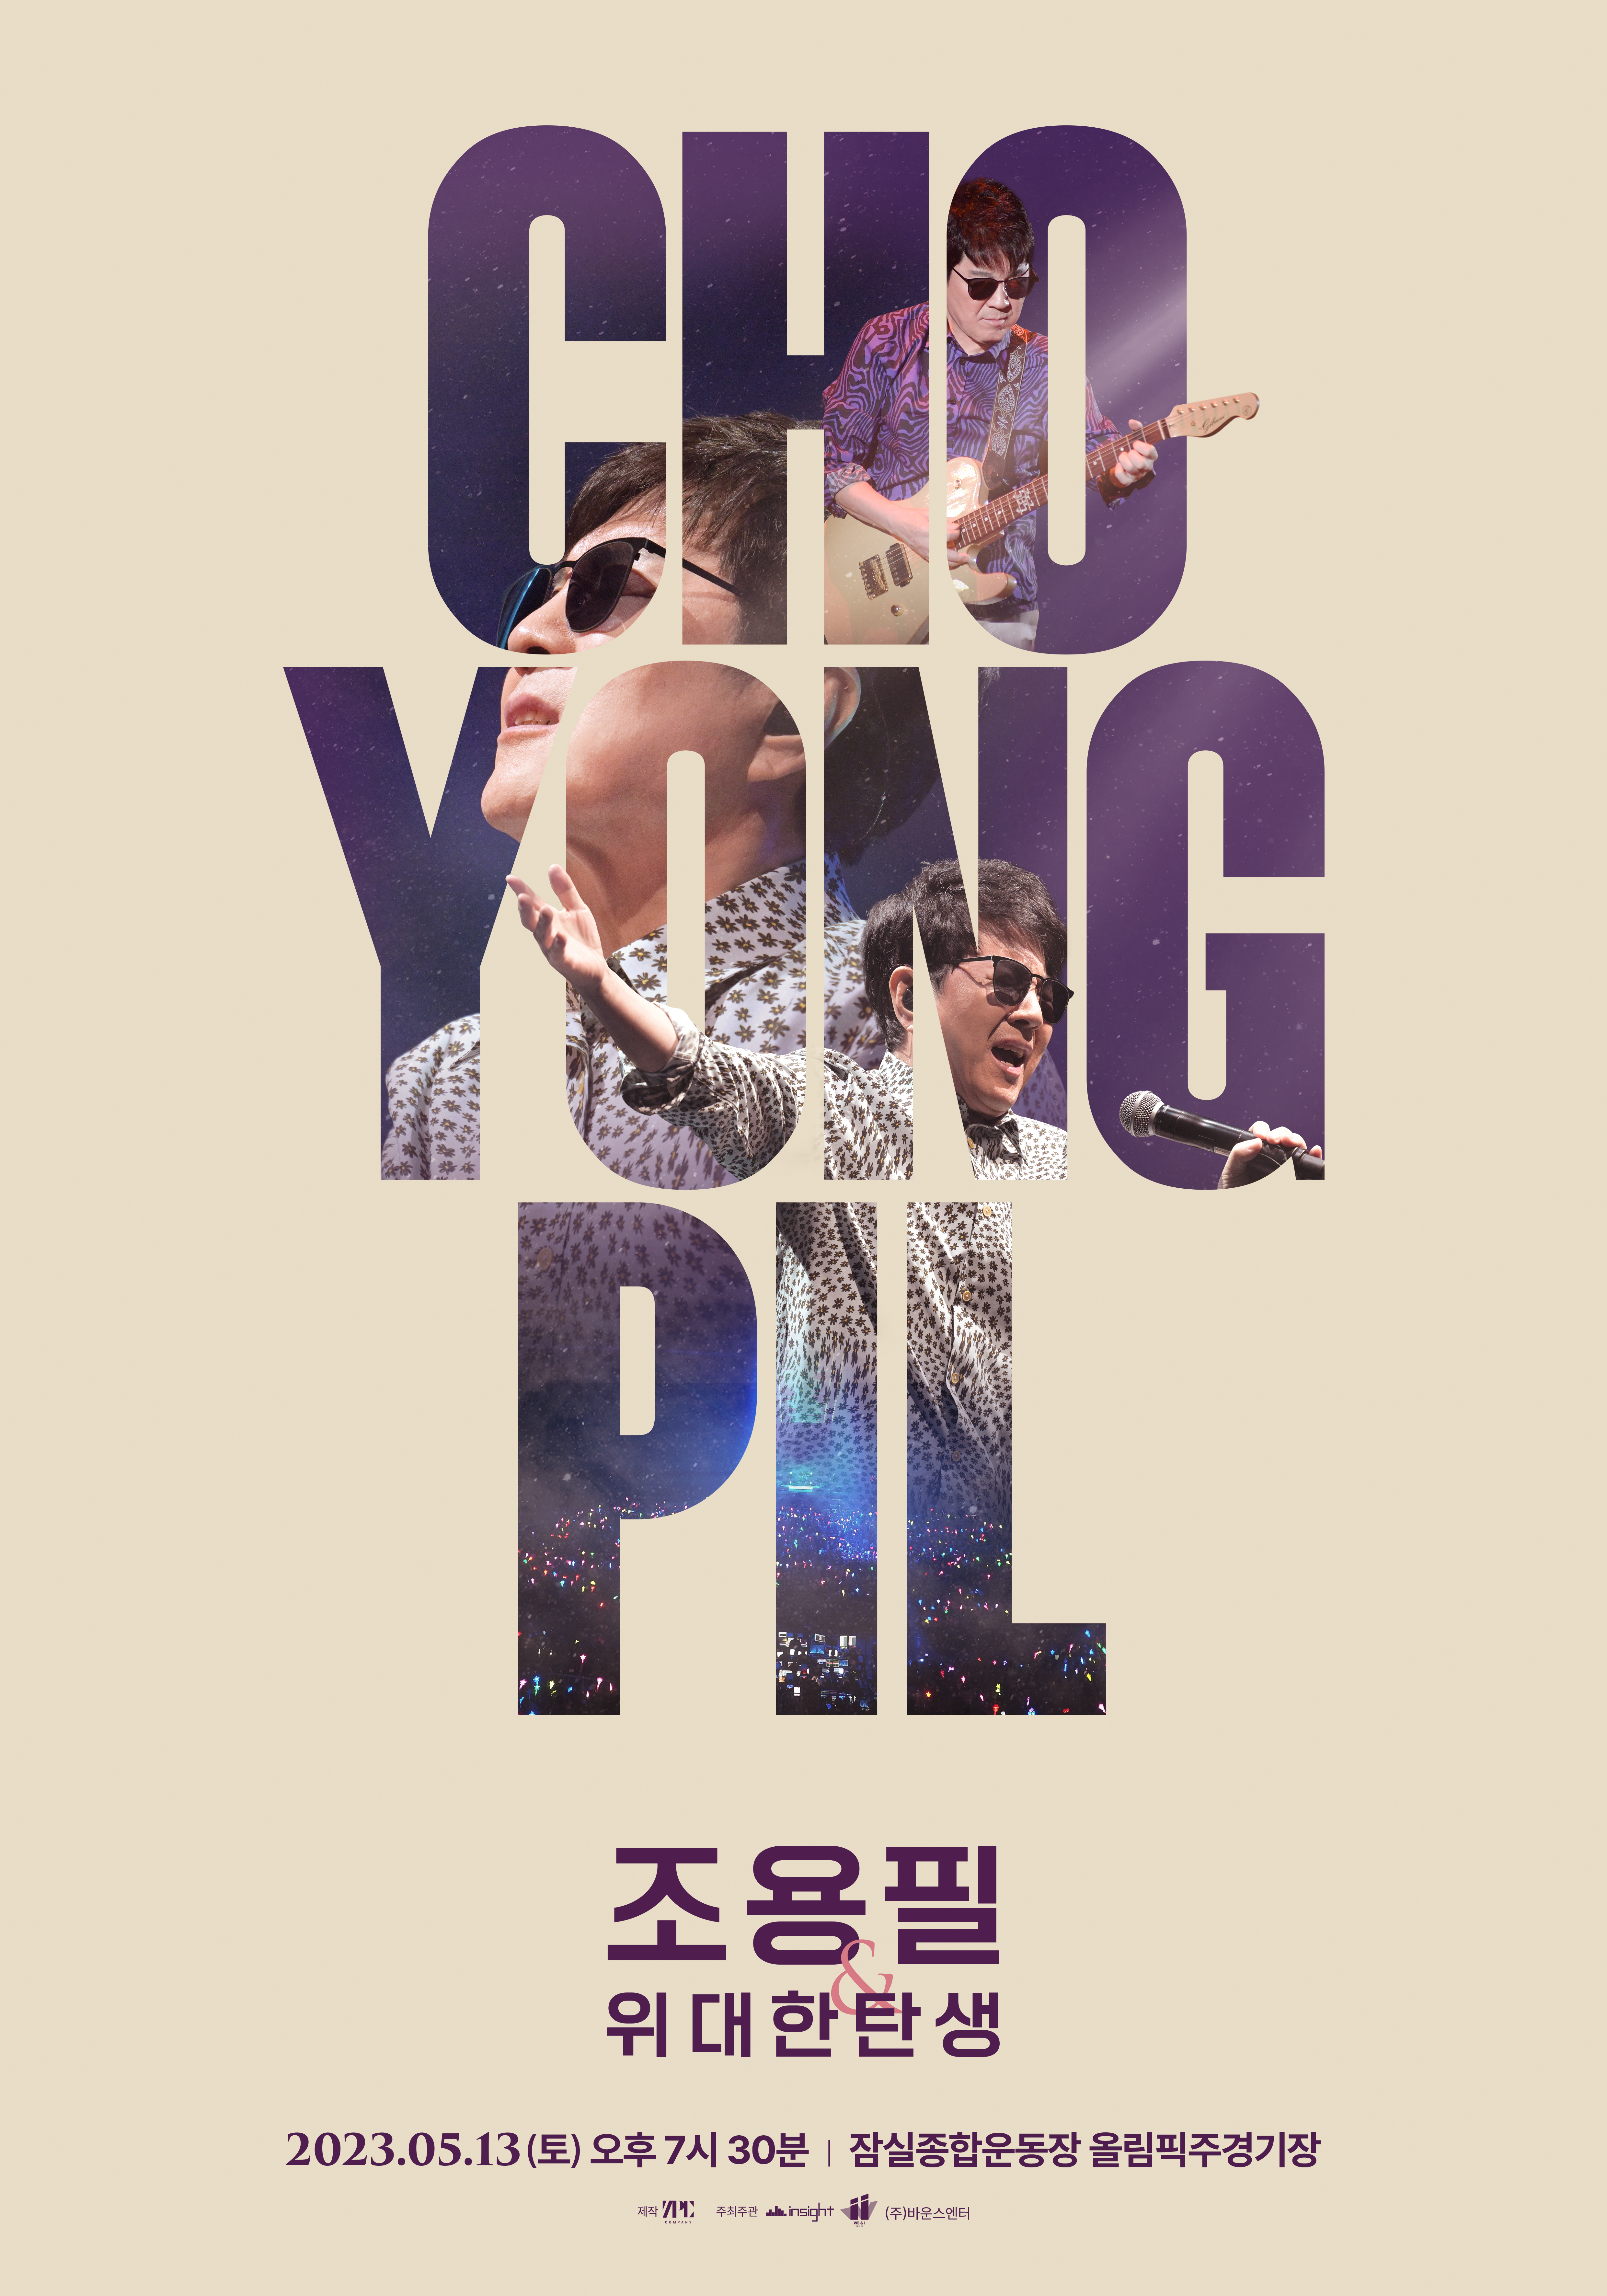 조용필 콘서트(서울) 메인 포스터